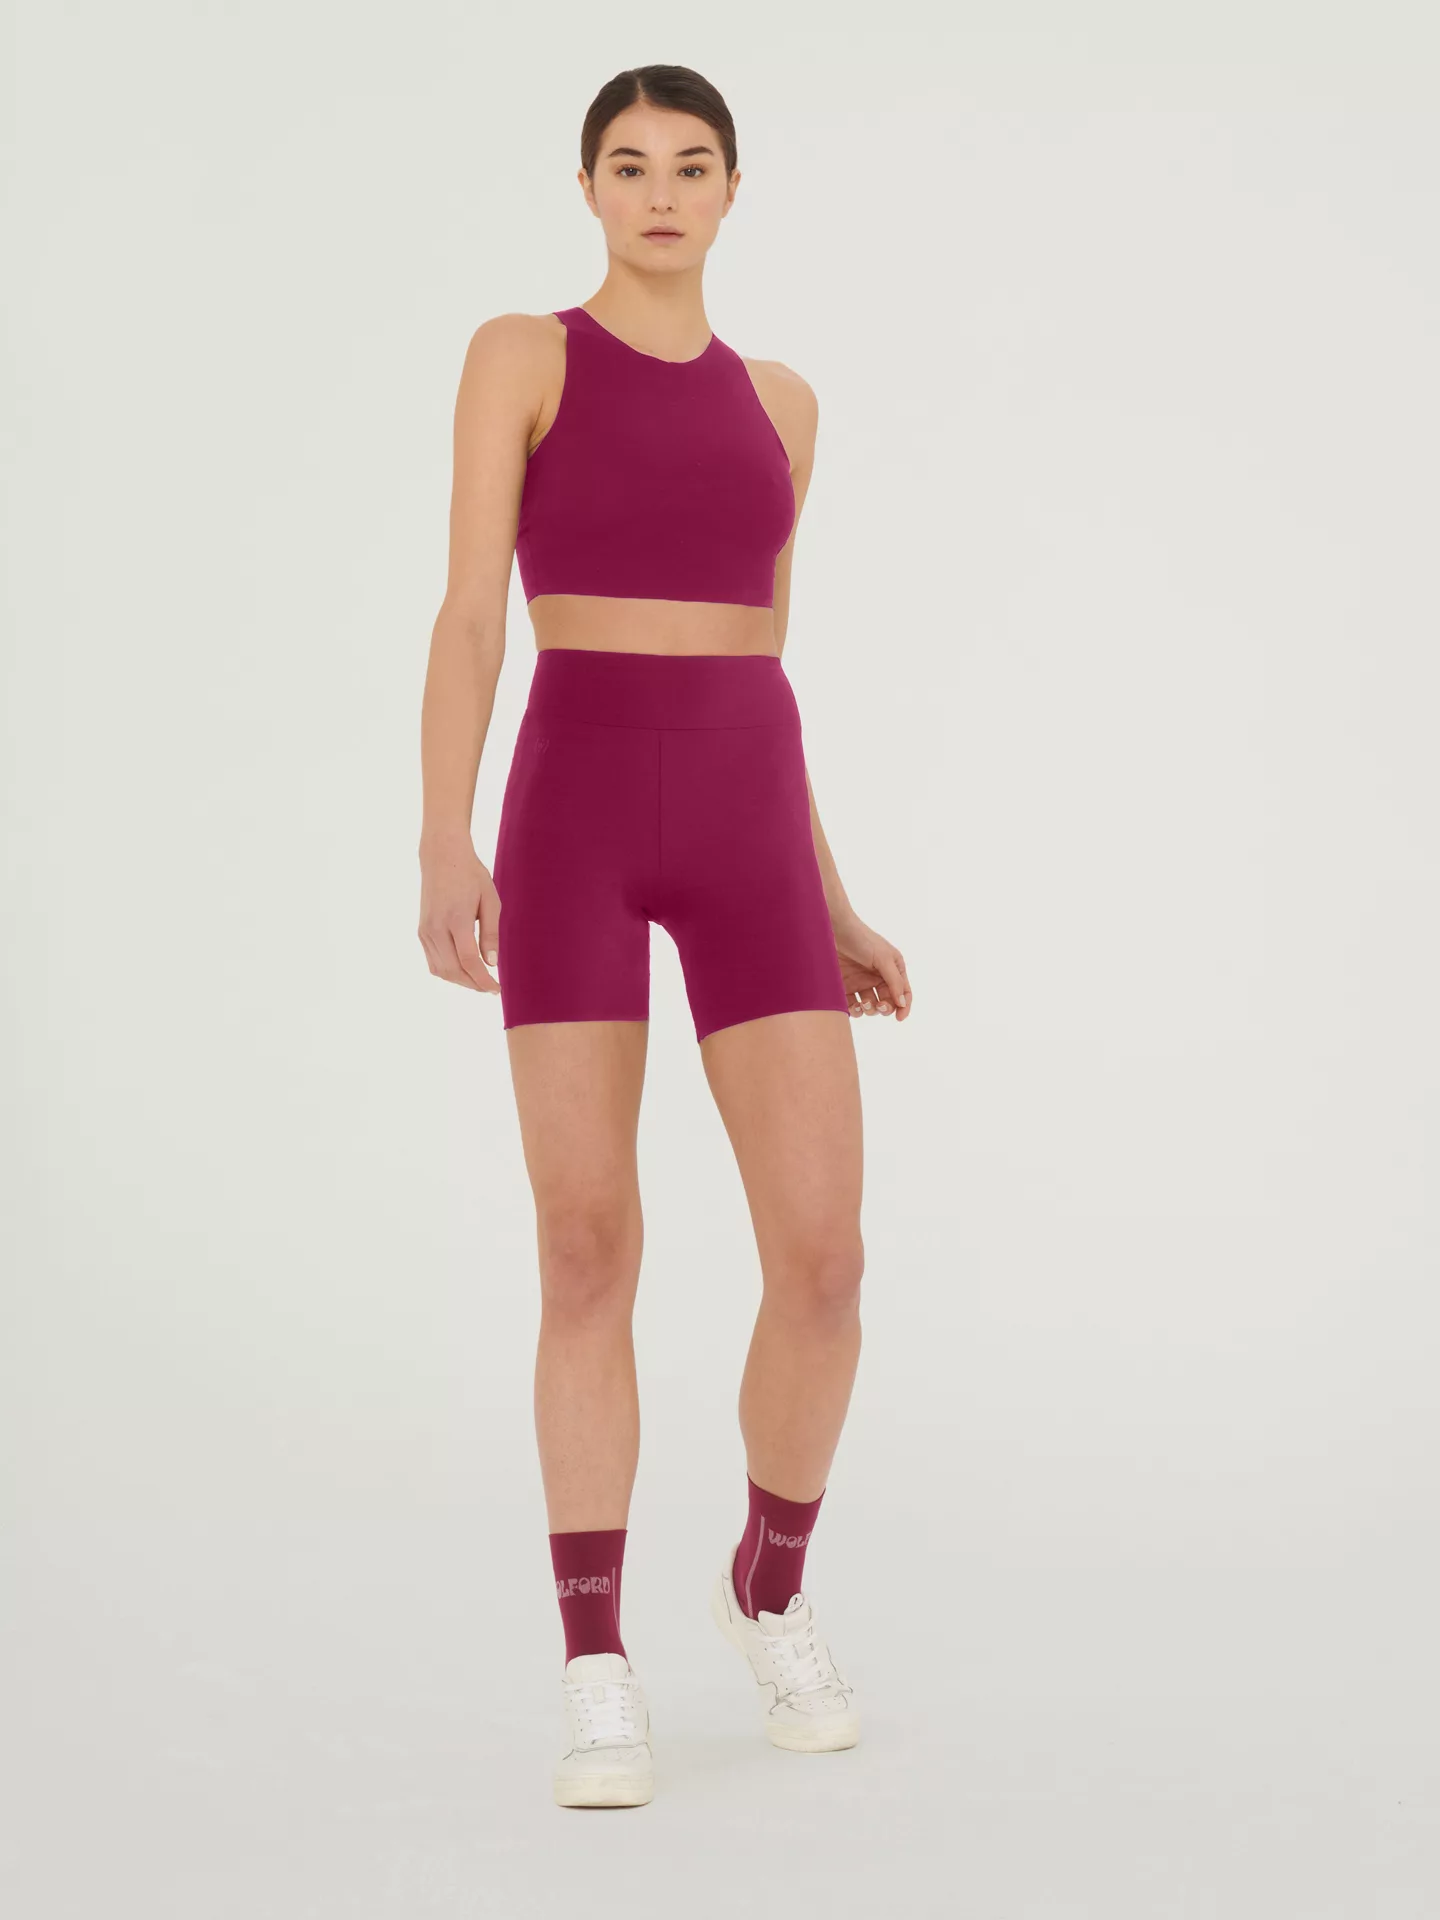 Wolford - The Workout Shorts, Frau, mineral red, Größe: L günstig online kaufen